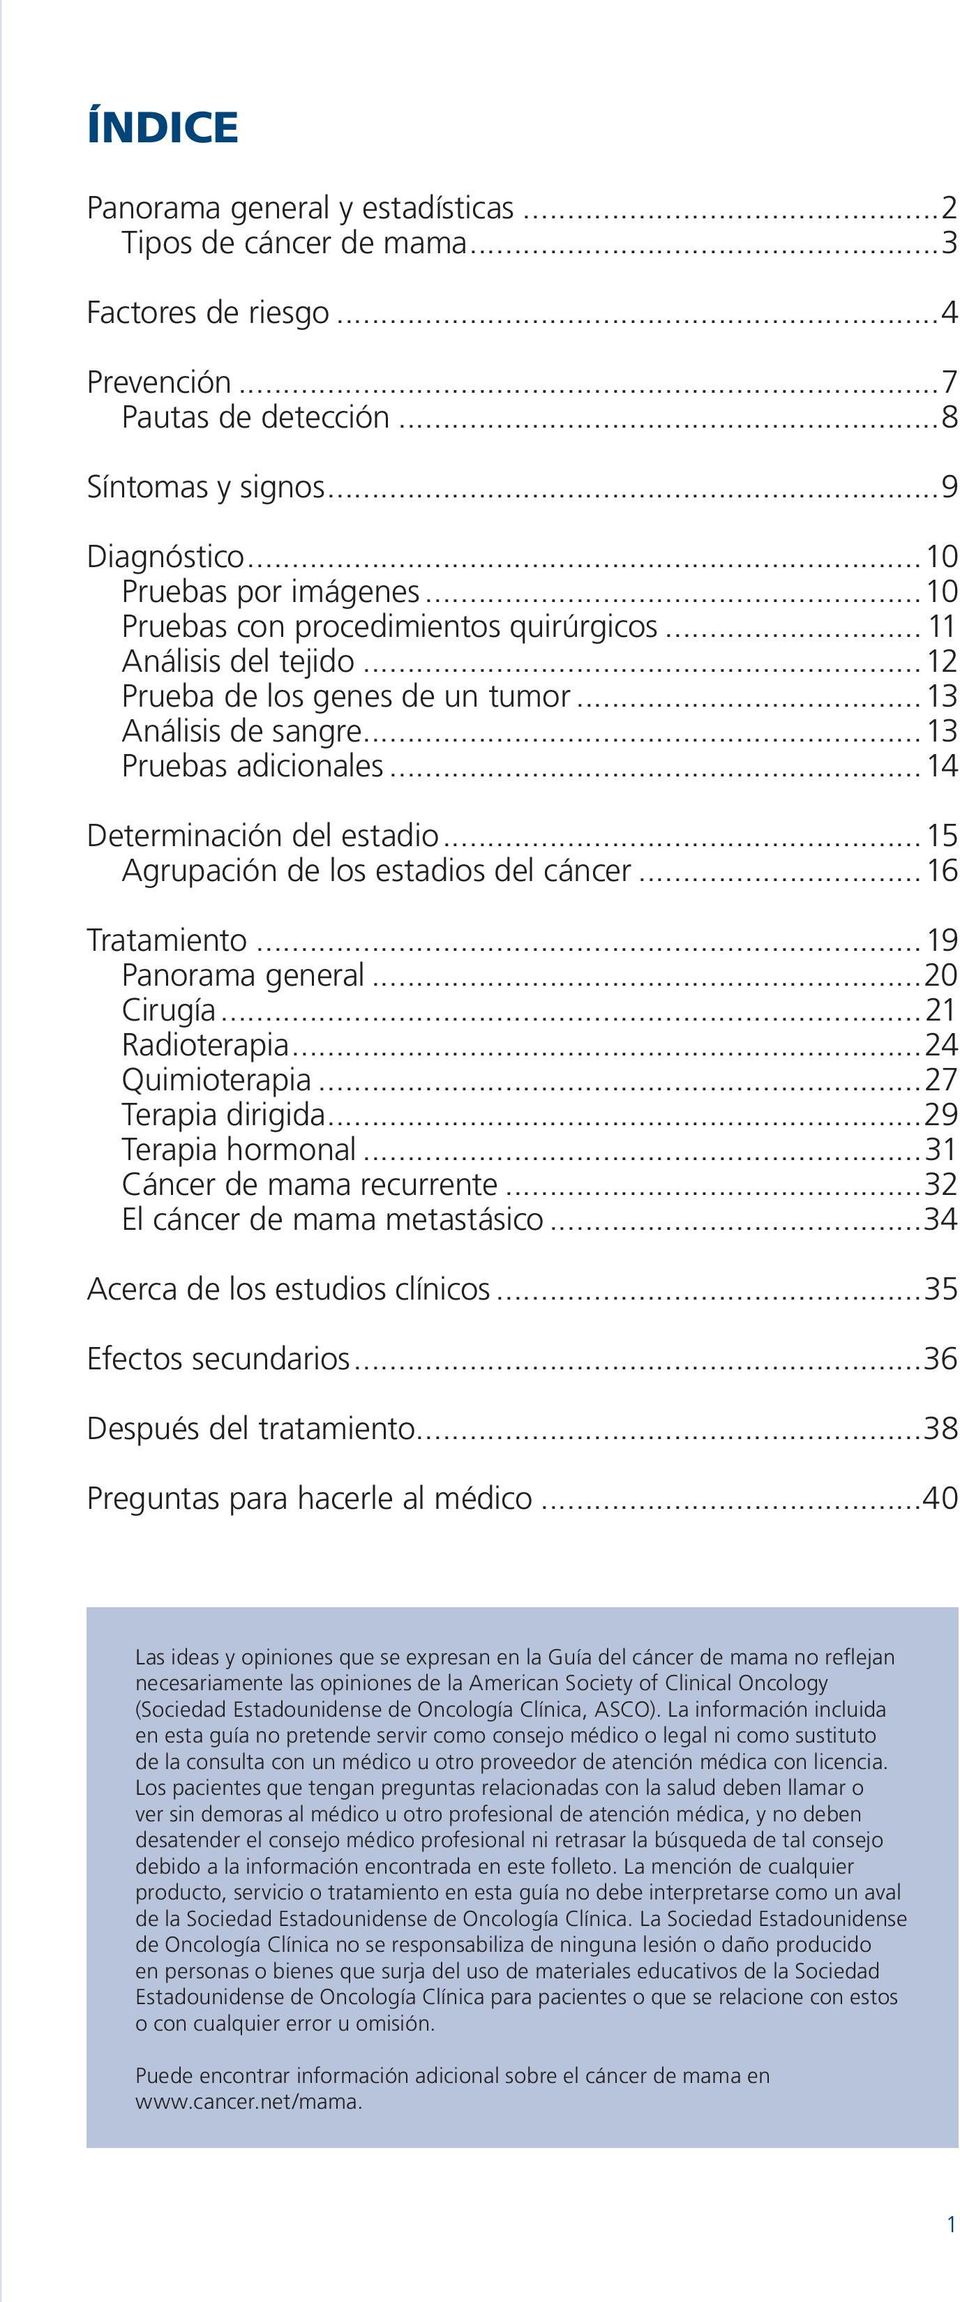 ..15 Agrupación de los estadios del cáncer...16 Tratamiento...19 Panorama general...20 Cirugía...21 Radioterapia...24 Quimioterapia...27 Terapia dirigida...29 Terapia hormonal.